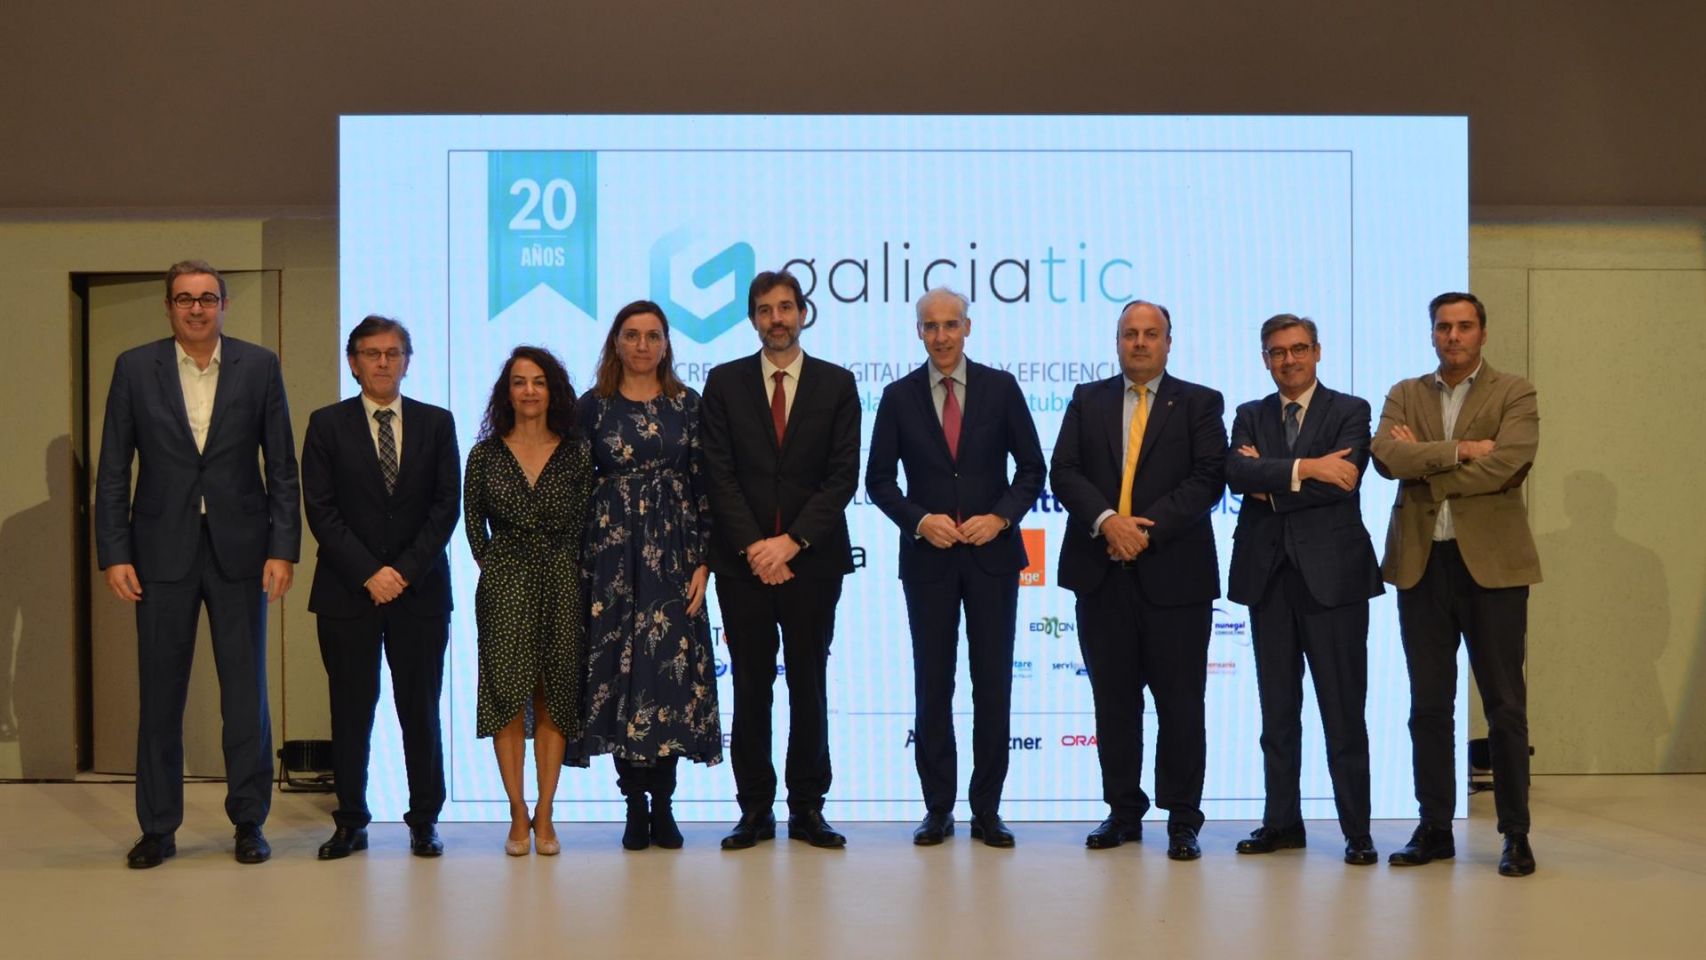 Acto de clausura del foro tecnológico GaliciaTic, este jueves en Santiago de Compostela 